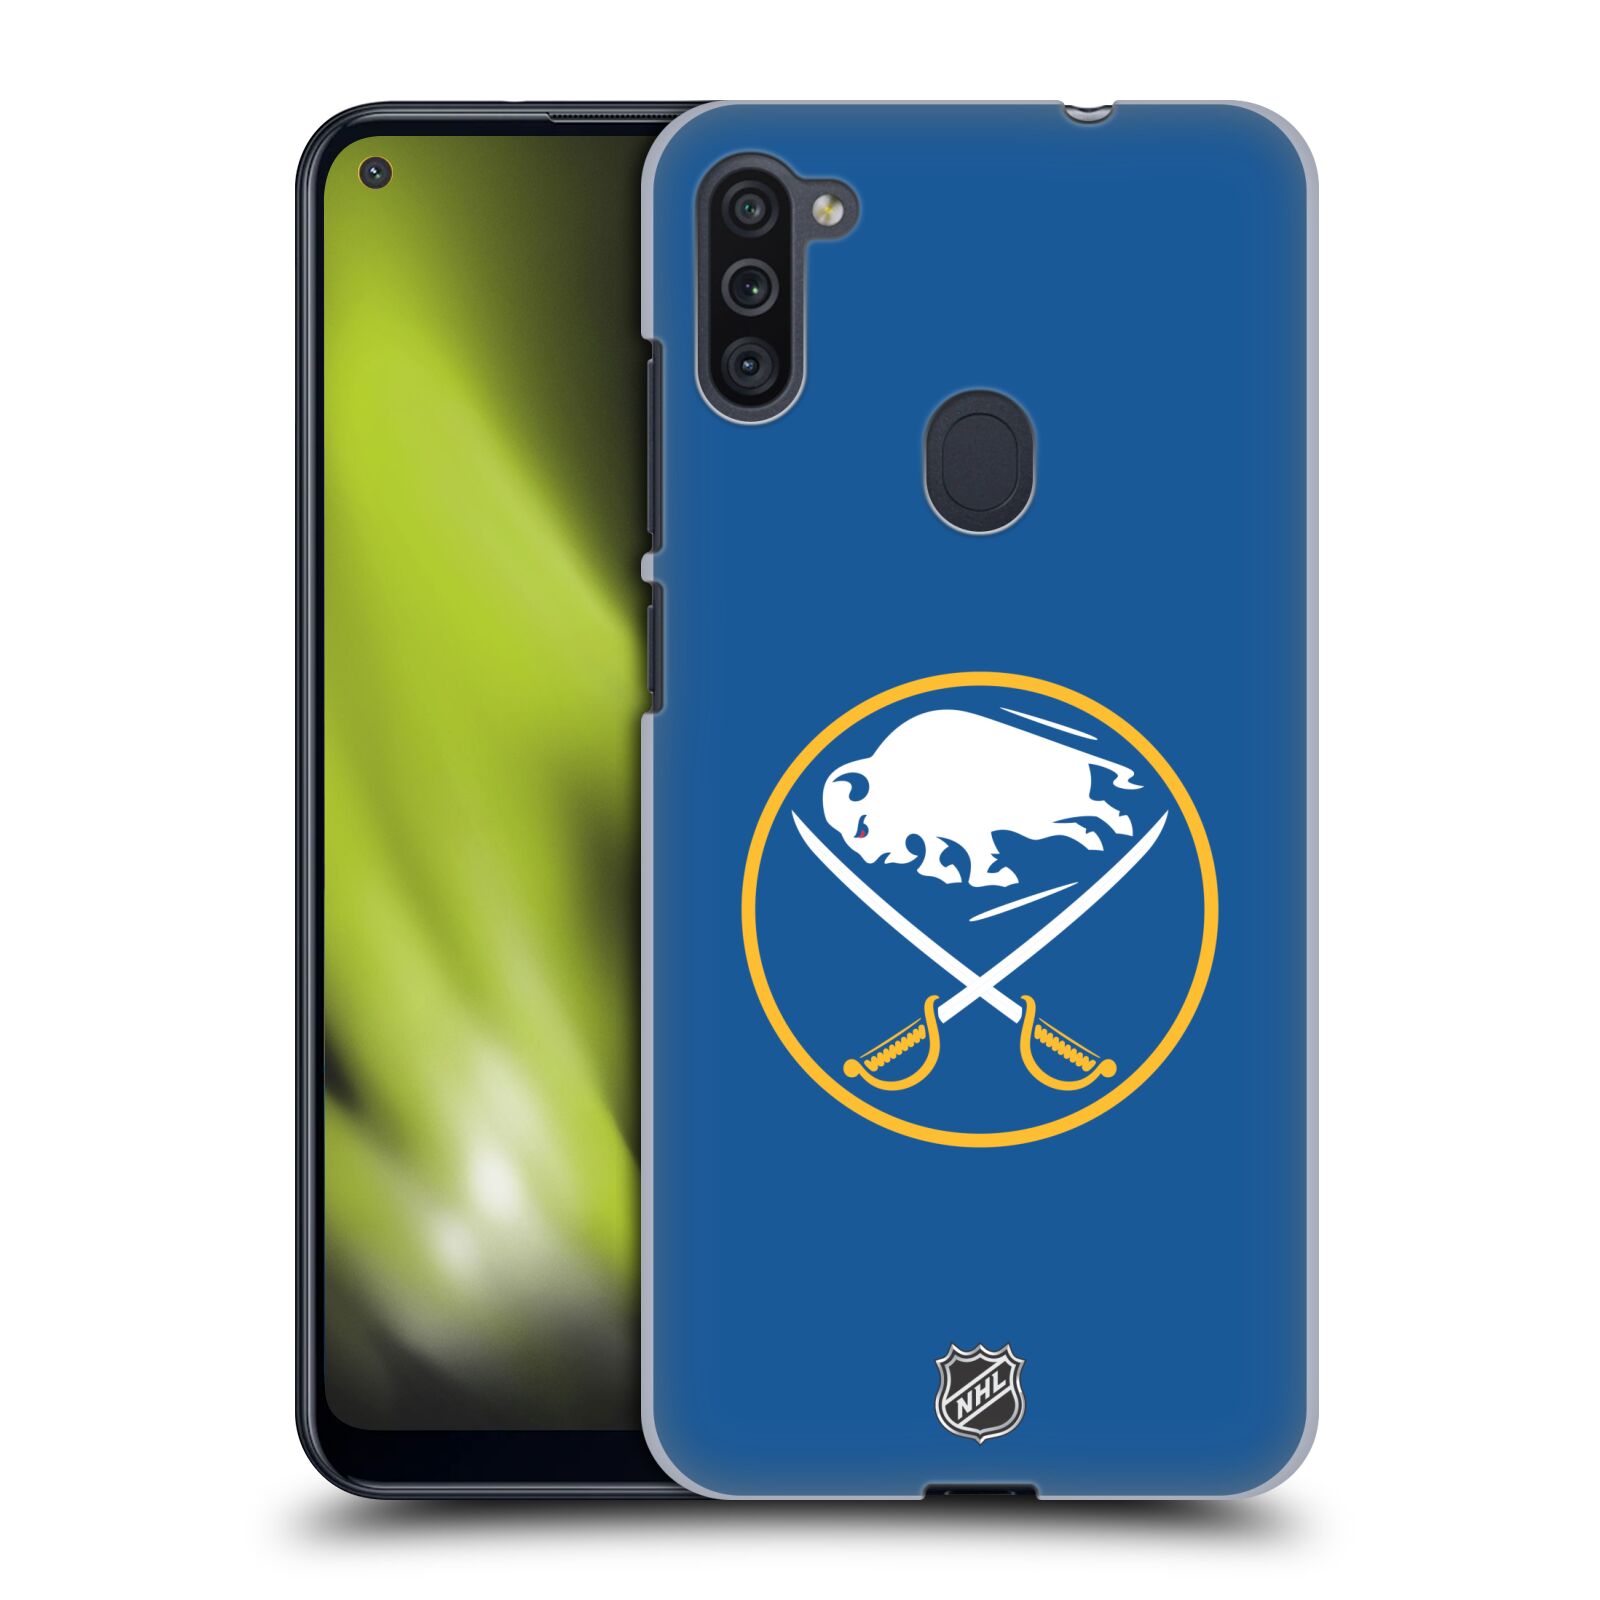 Pouzdro na mobil Samsung Galaxy M11 - HEAD CASE - Hokej NHL - Buffalo Sabres - modré pozadí